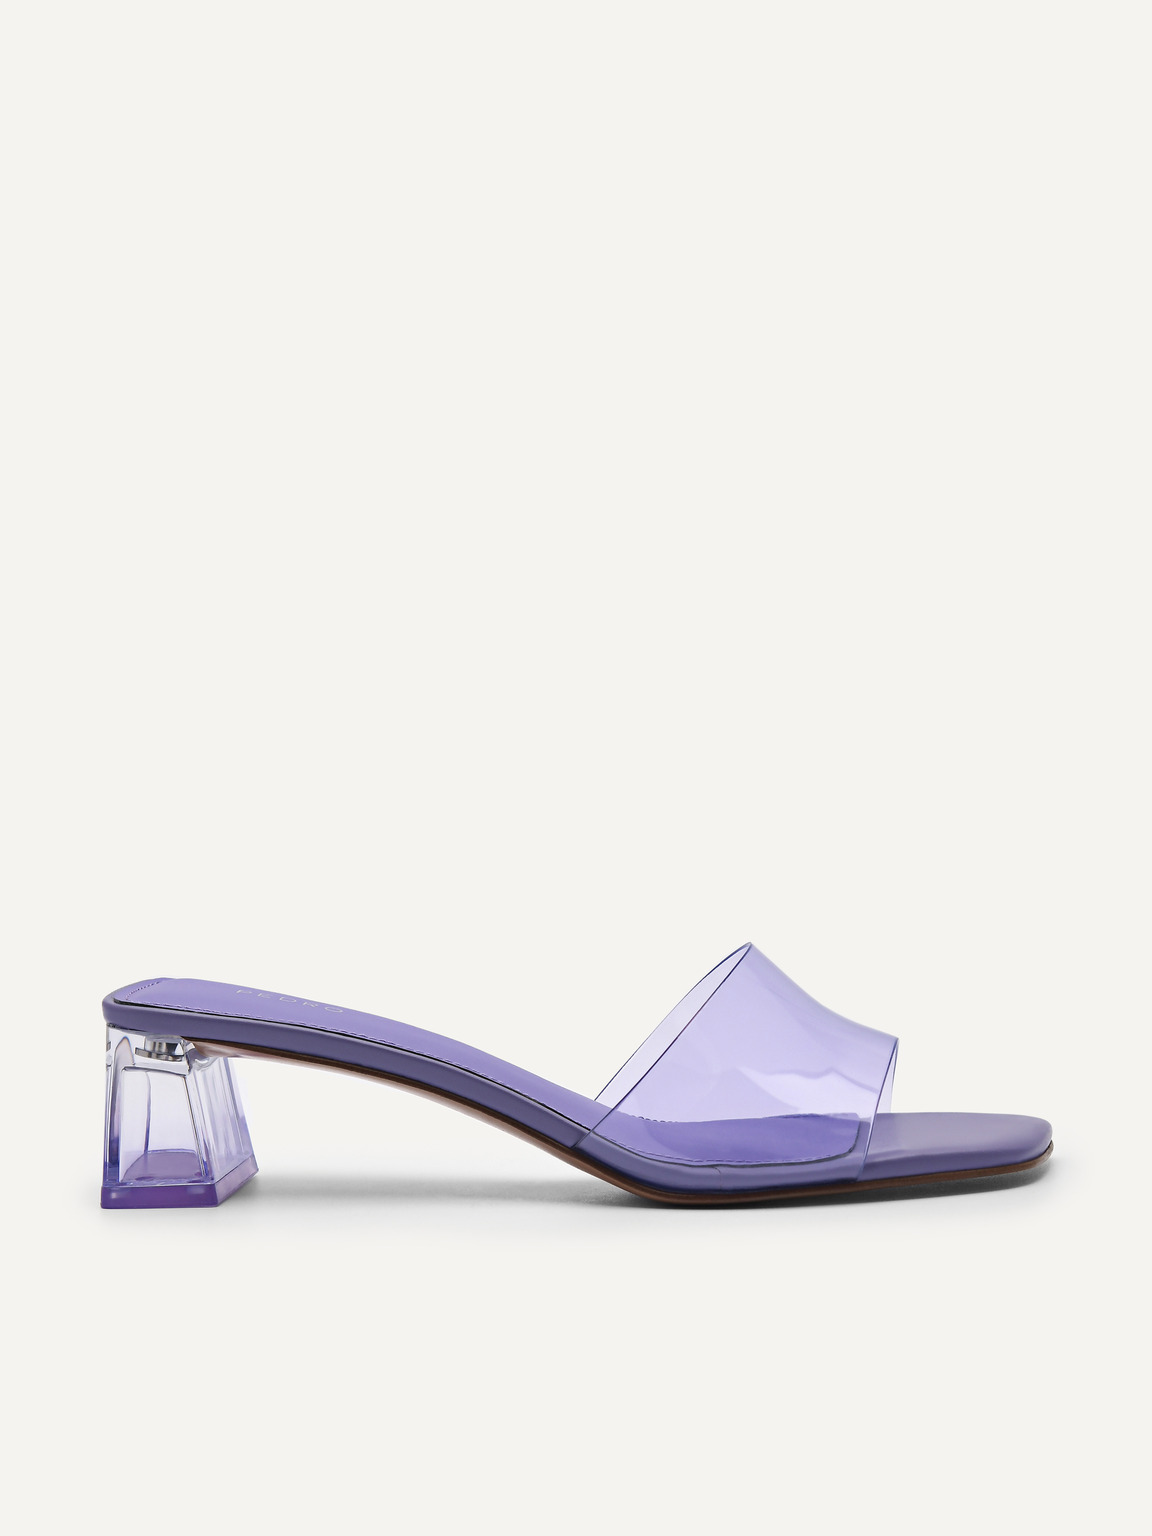 Megan高跟一腳蹬涼鞋, 紫羅蘭色